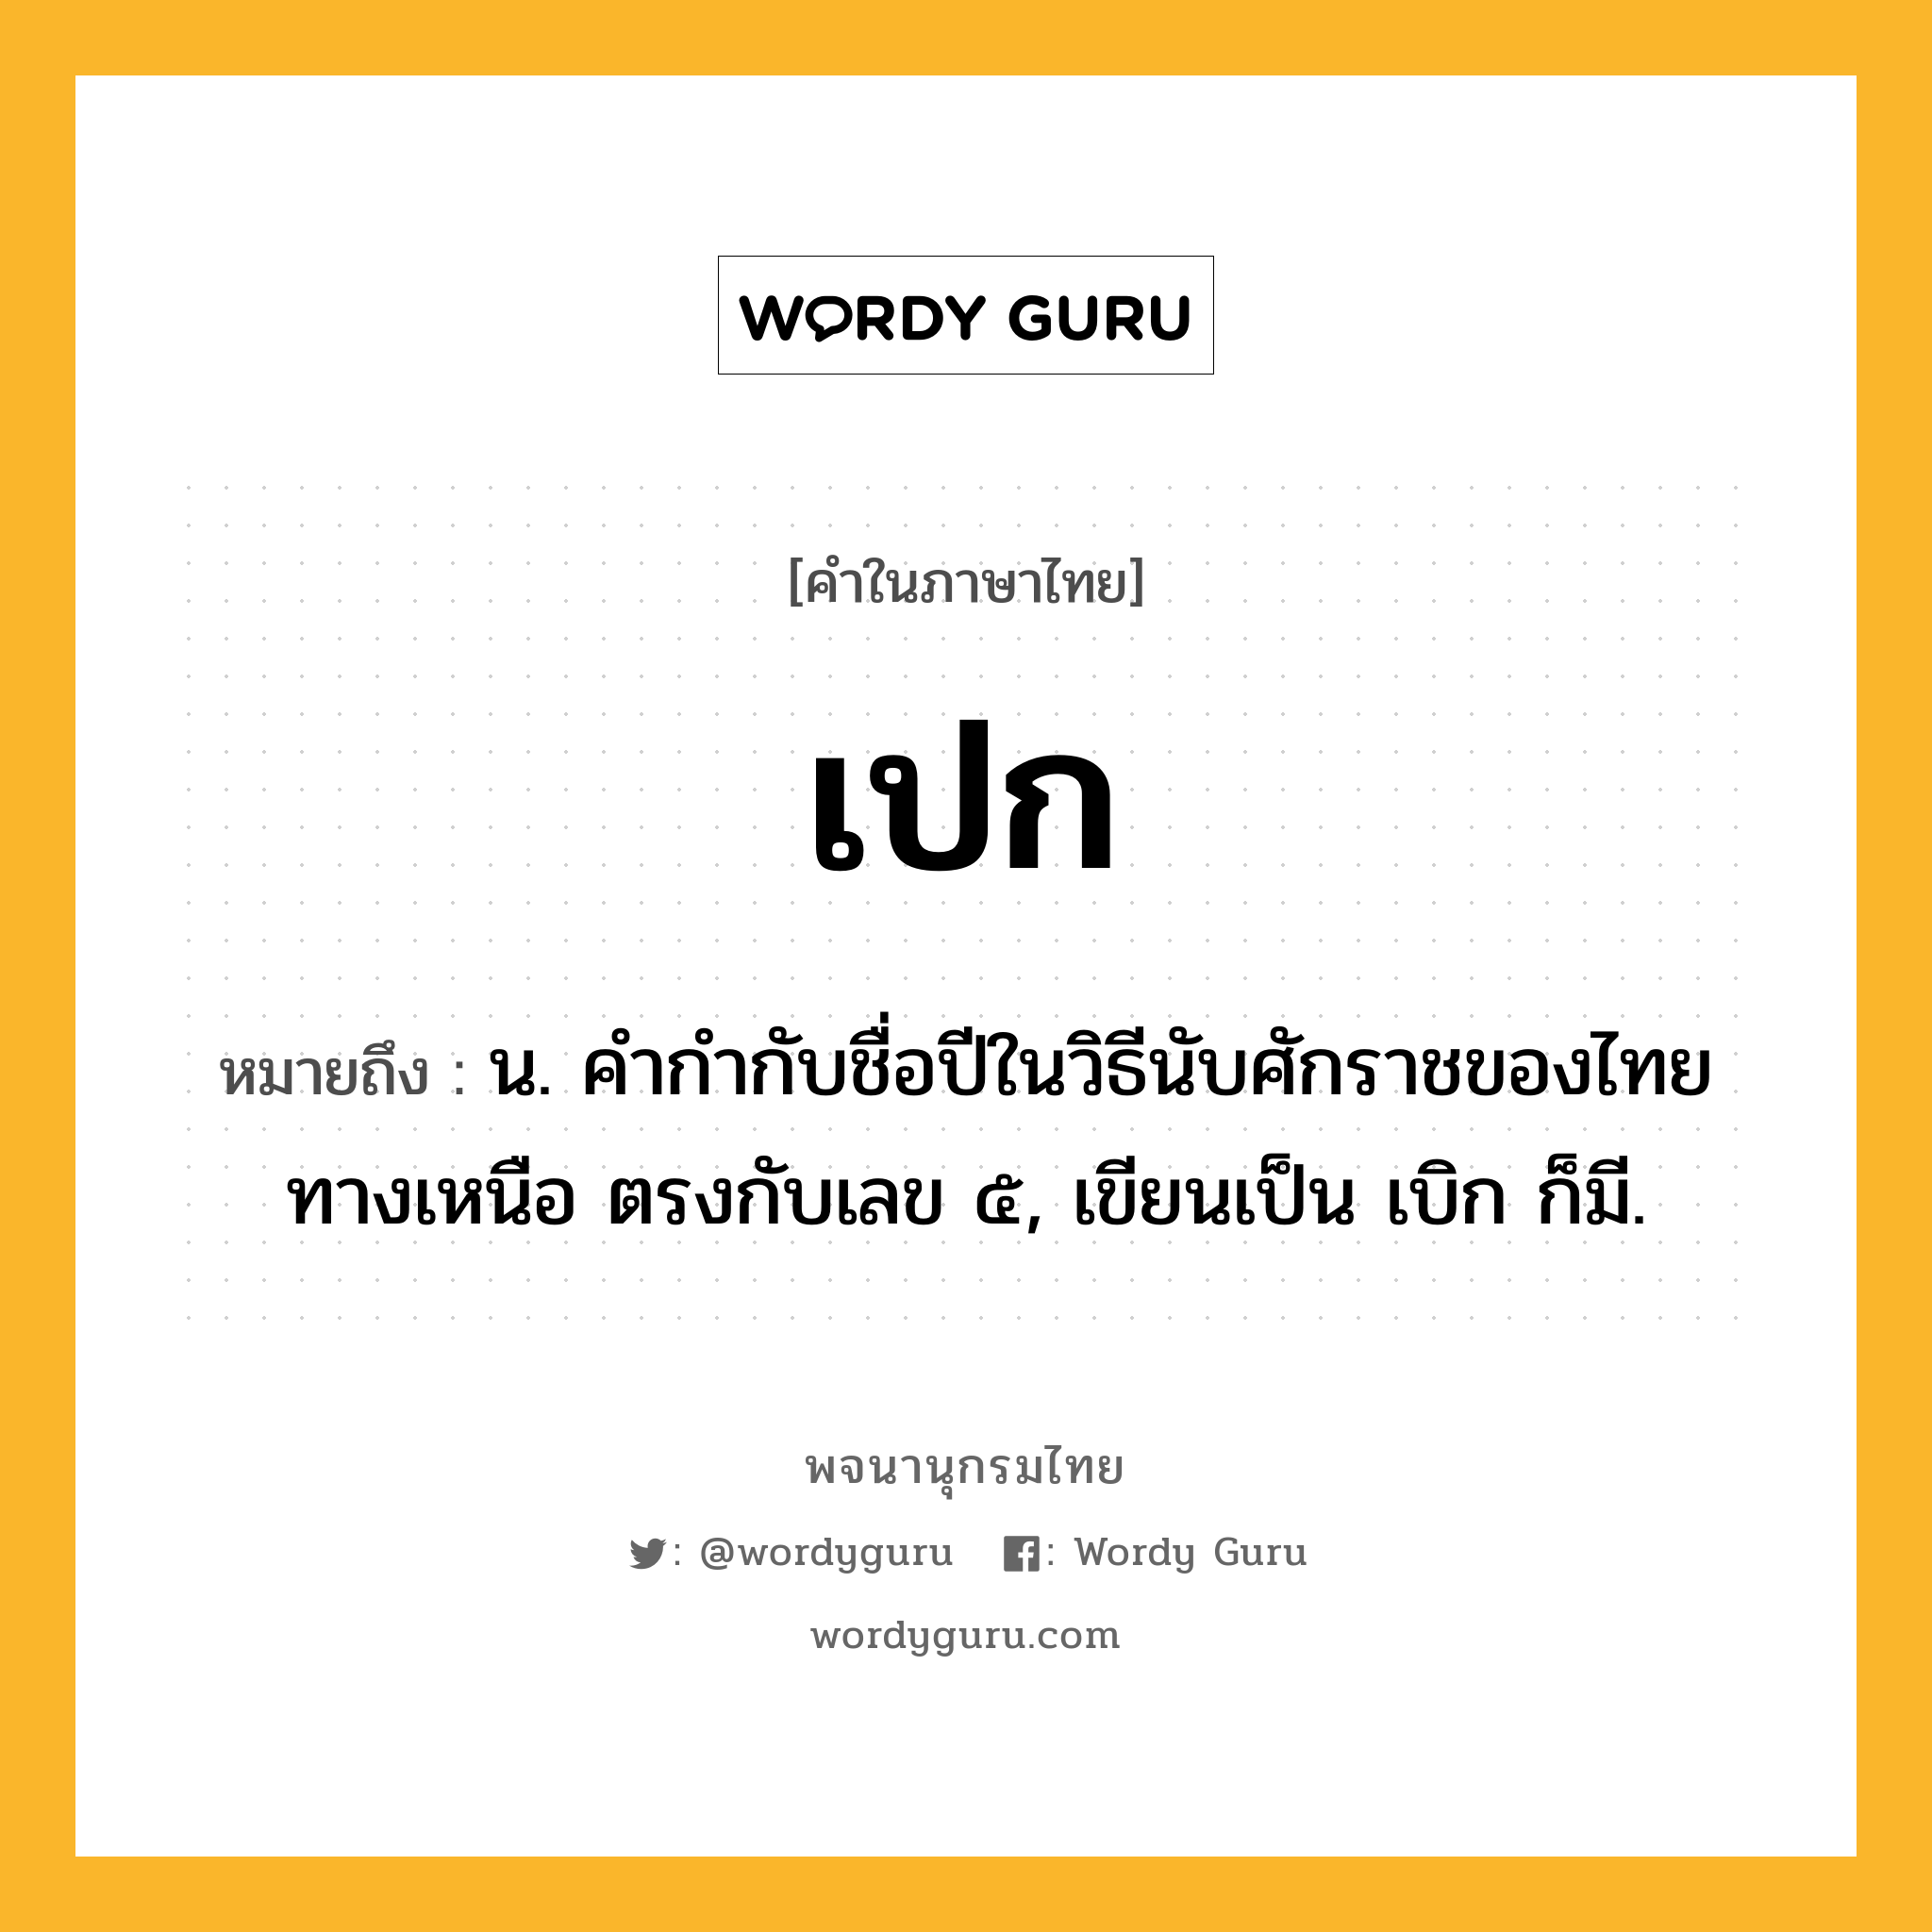 เปก ความหมาย หมายถึงอะไร?, คำในภาษาไทย เปก หมายถึง น. คํากํากับชื่อปีในวิธีนับศักราชของไทยทางเหนือ ตรงกับเลข ๕, เขียนเป็น เบิก ก็มี.